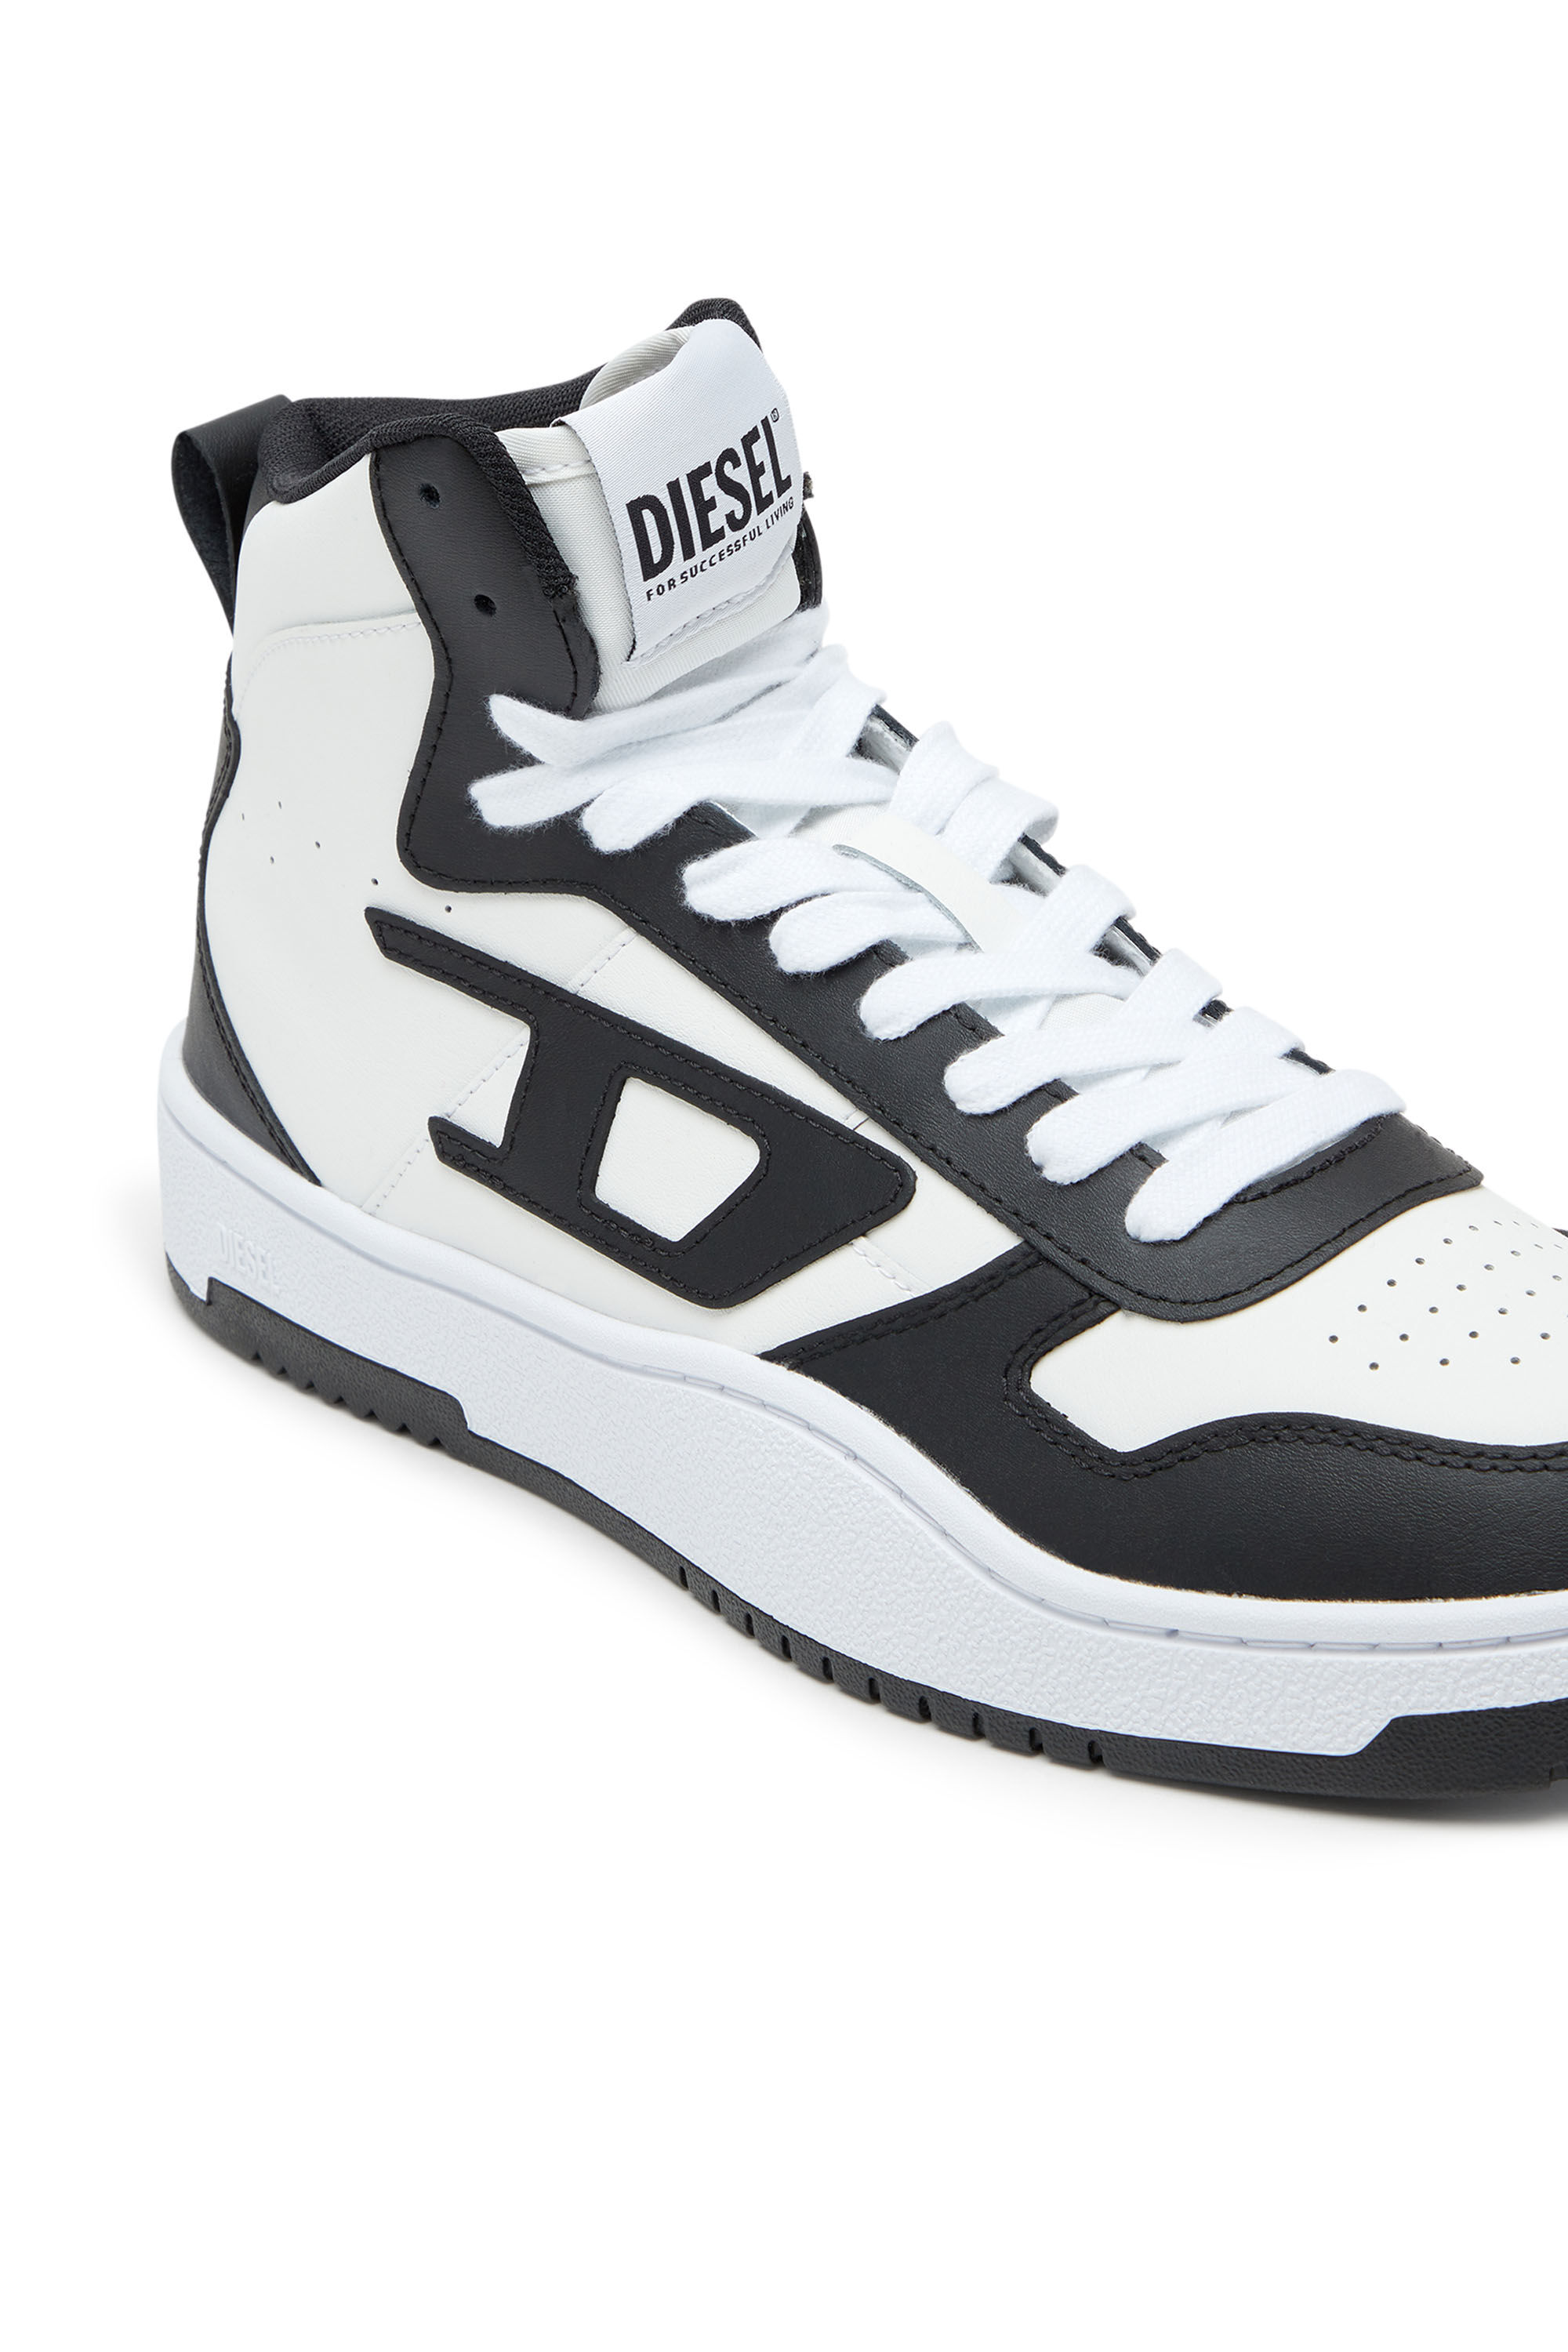 Diesel - S-UKIYO V2 MID, Herren S-Ukiyo-High Top-Sneakers aus Leder in Bunt - Image 6